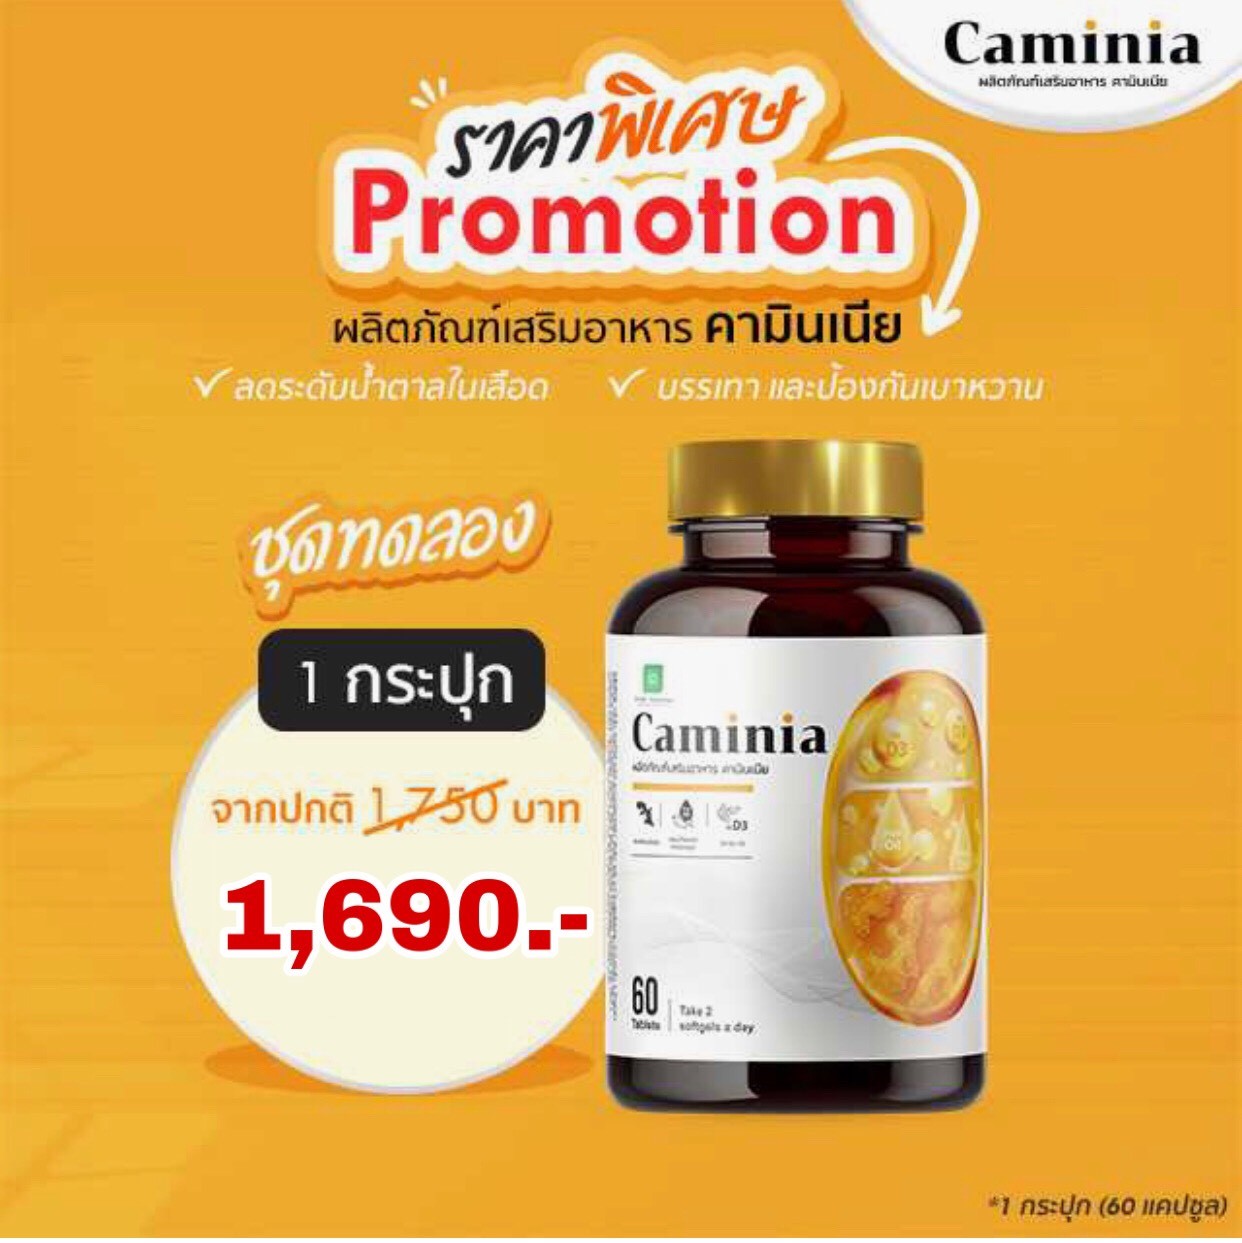 (ส่งฟรี) คามินเนีย Caminia ป้องกันและบรรเทา เบาหวาน น้ำตาล ความดัน